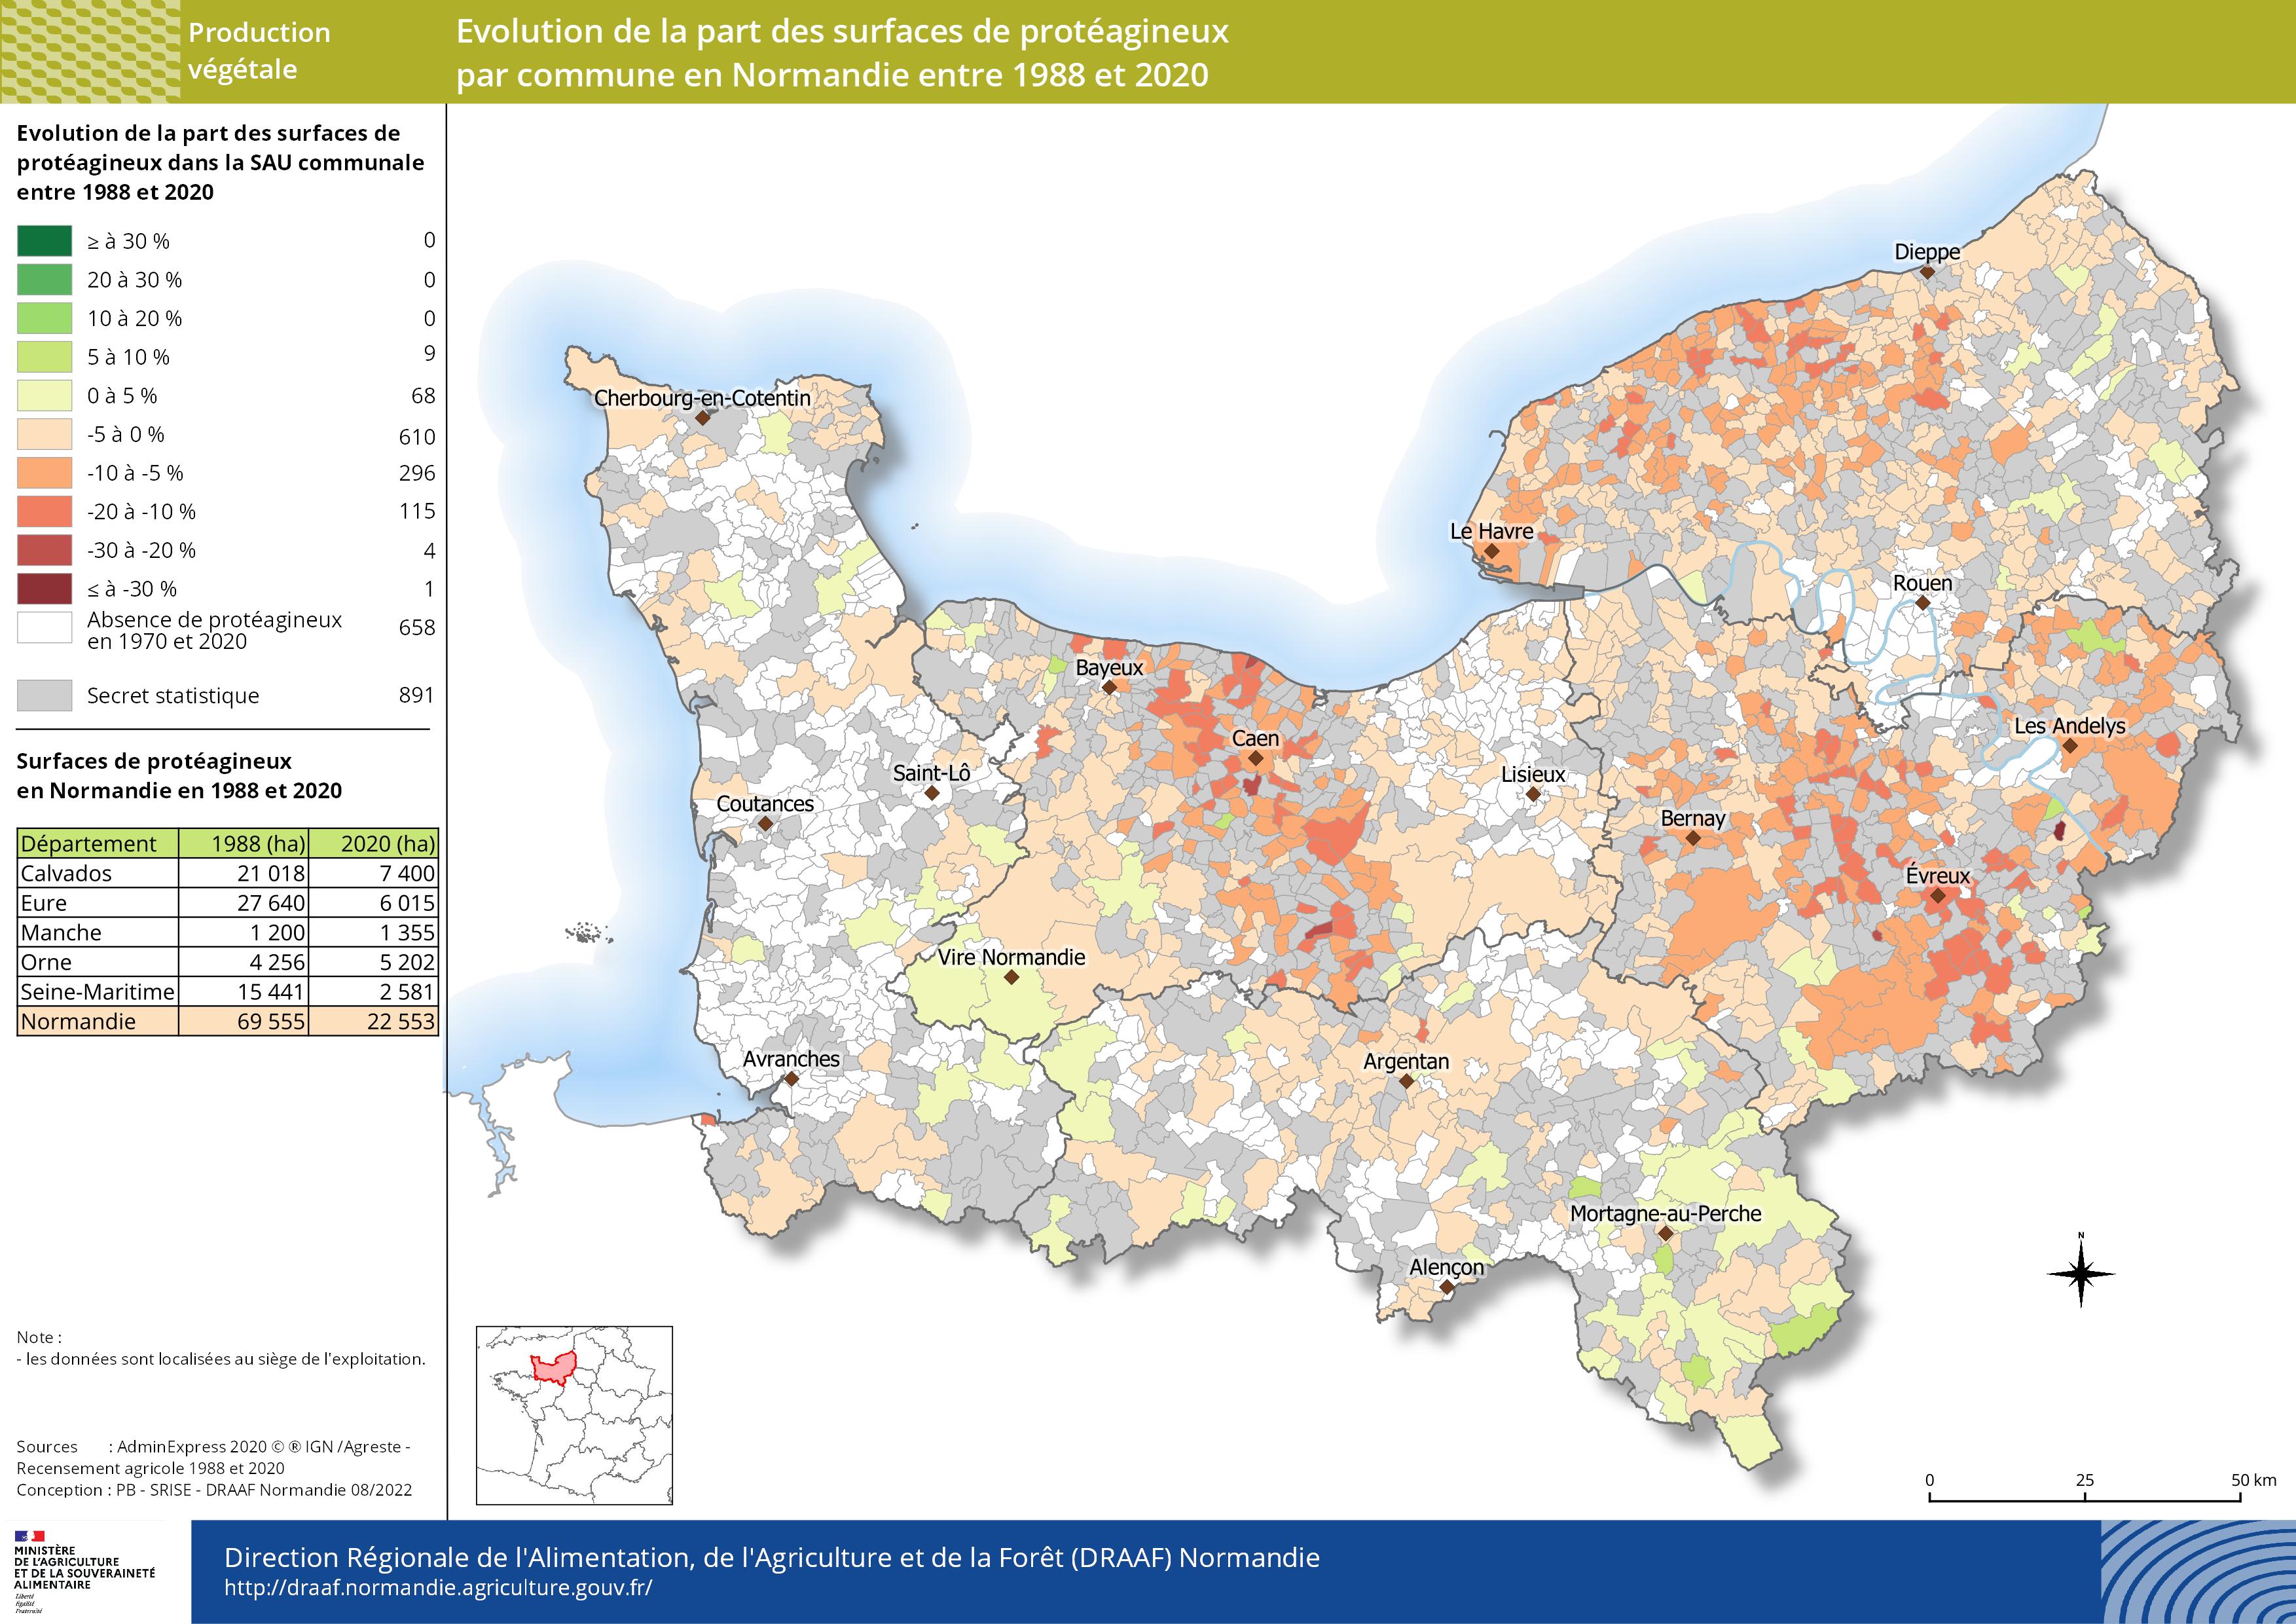 carte représentant l'évolution de la part des surfaces de protéagineux par commune en Normandie entre 1988 et 2020